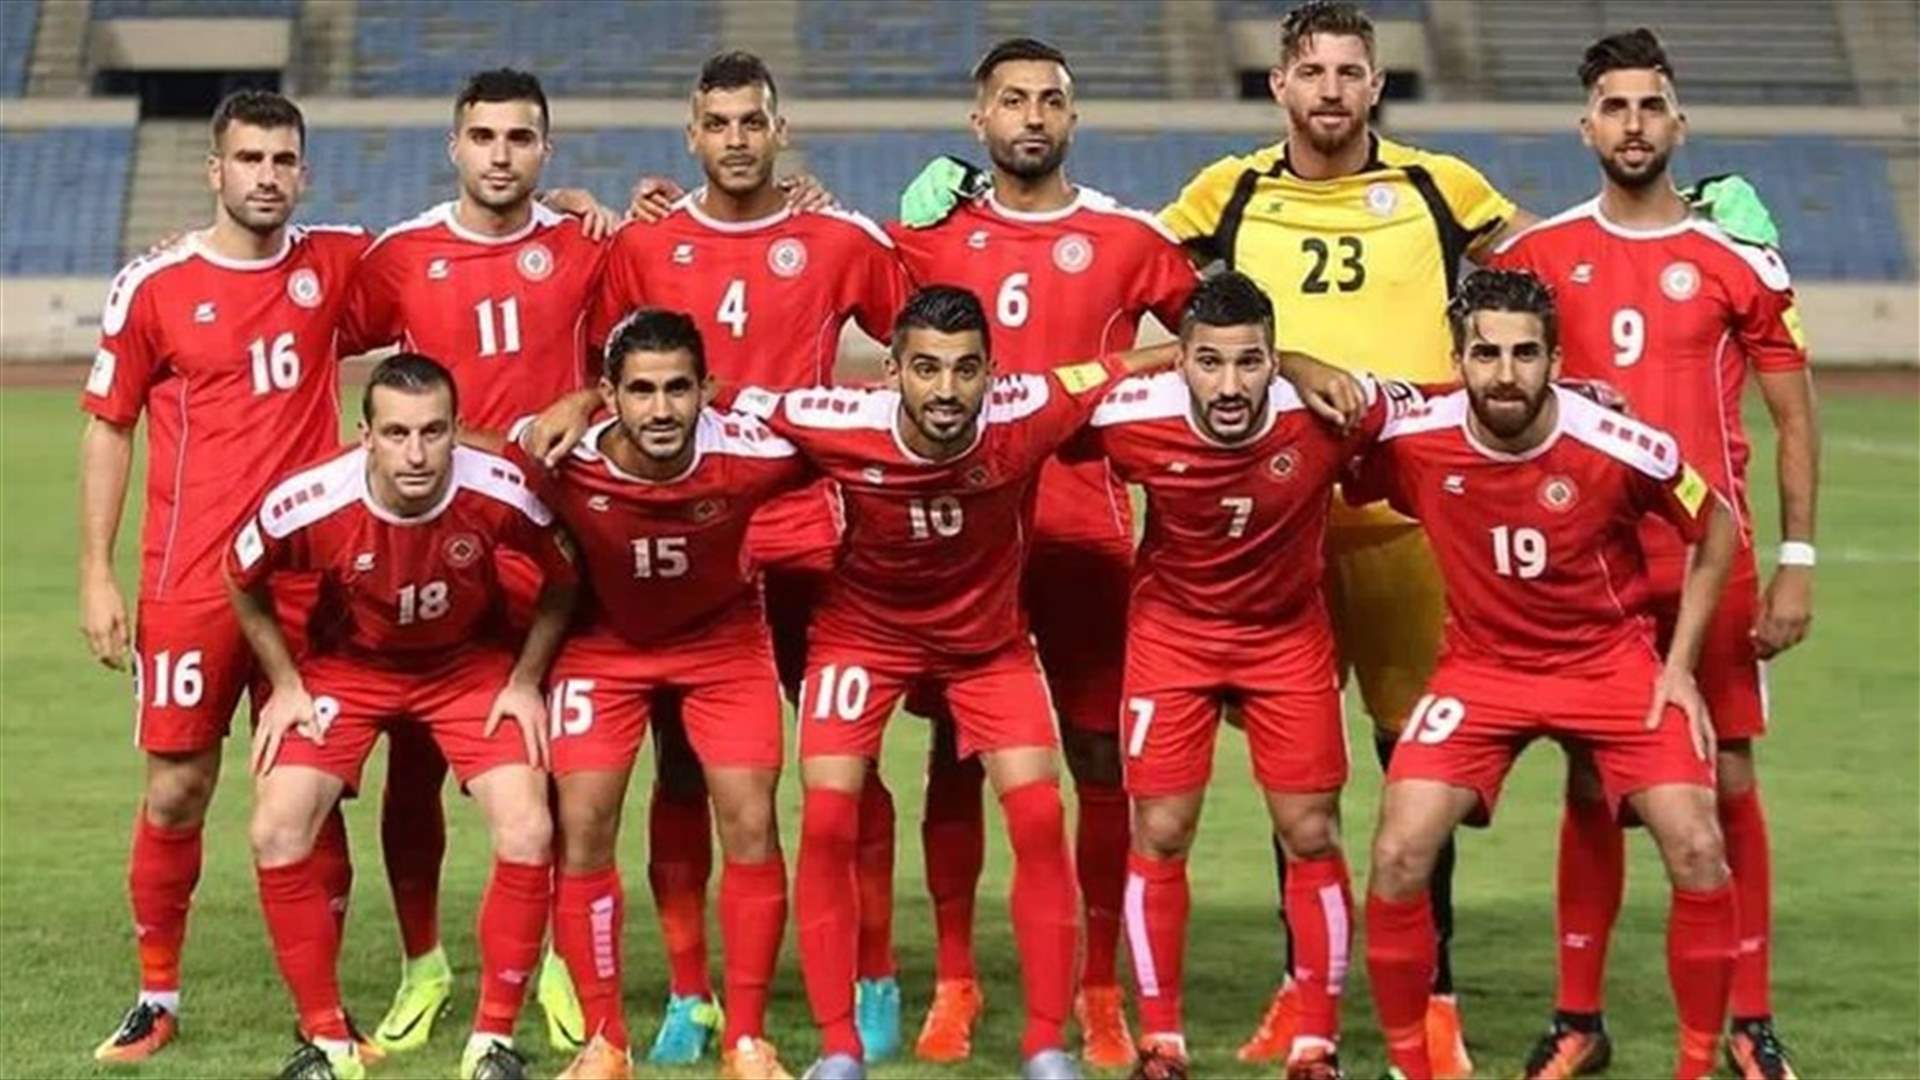 أين أوقعت قرعة تصفيات كأس اسيا لكرة القدم المنتخب اللبناني؟